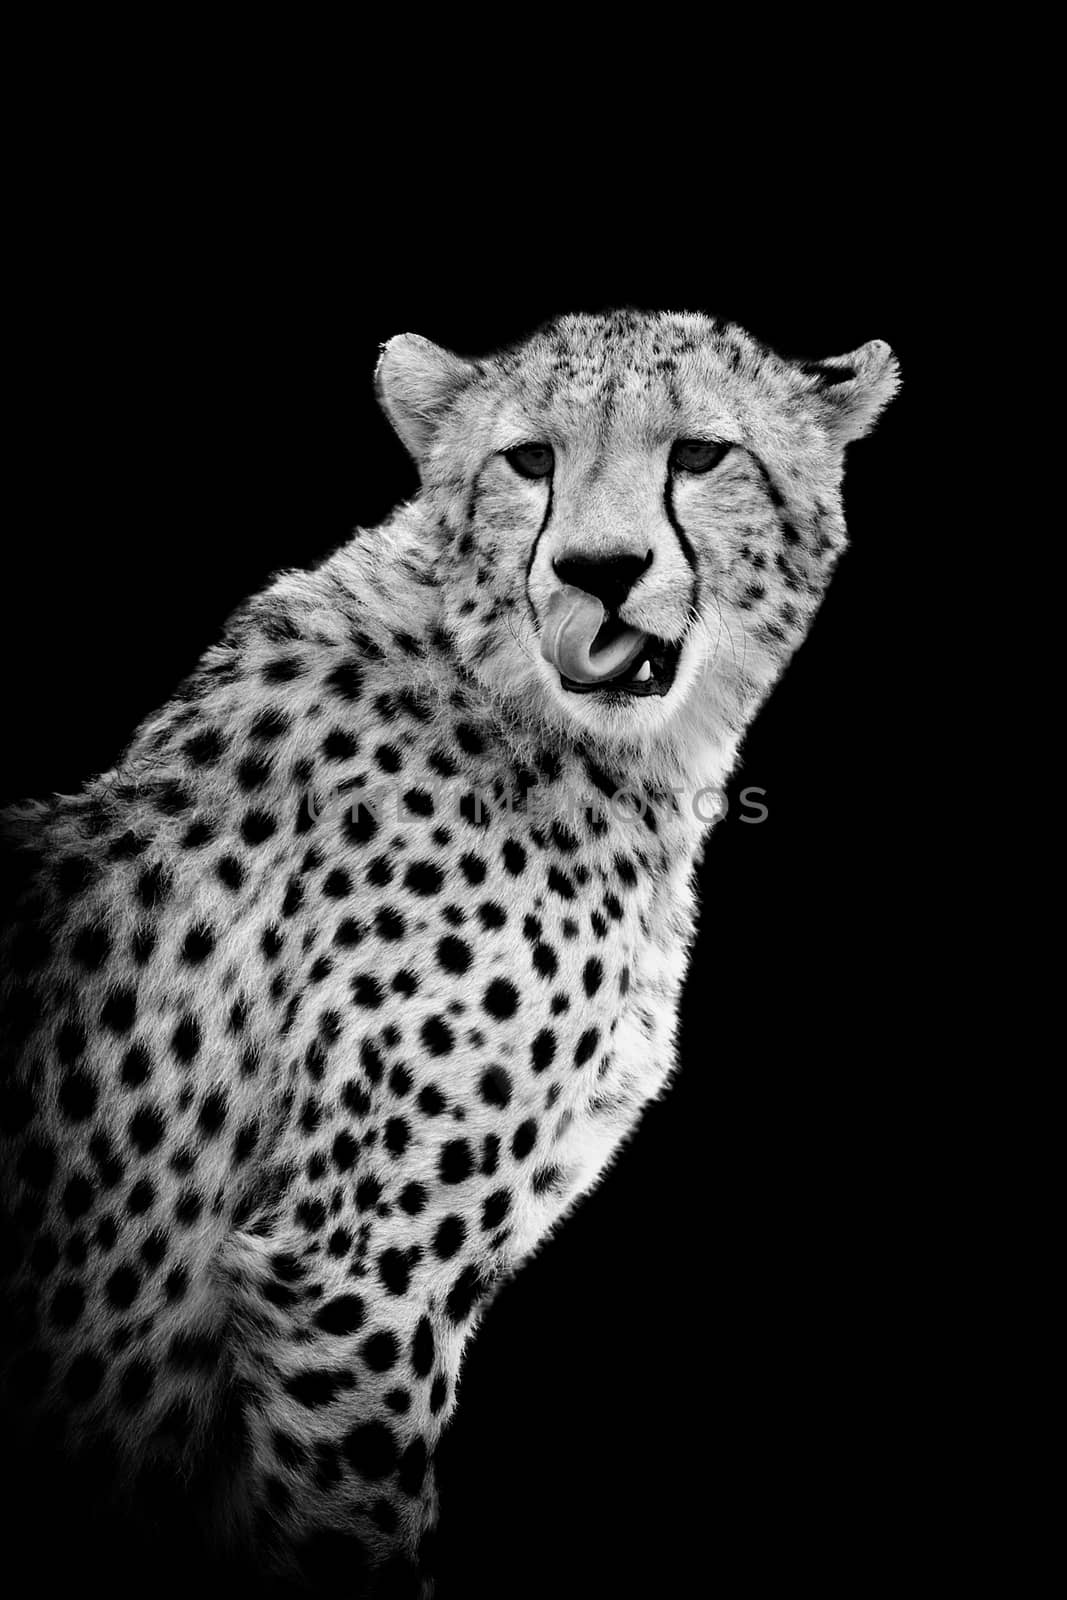 Cheetah on dark background by byrdyak